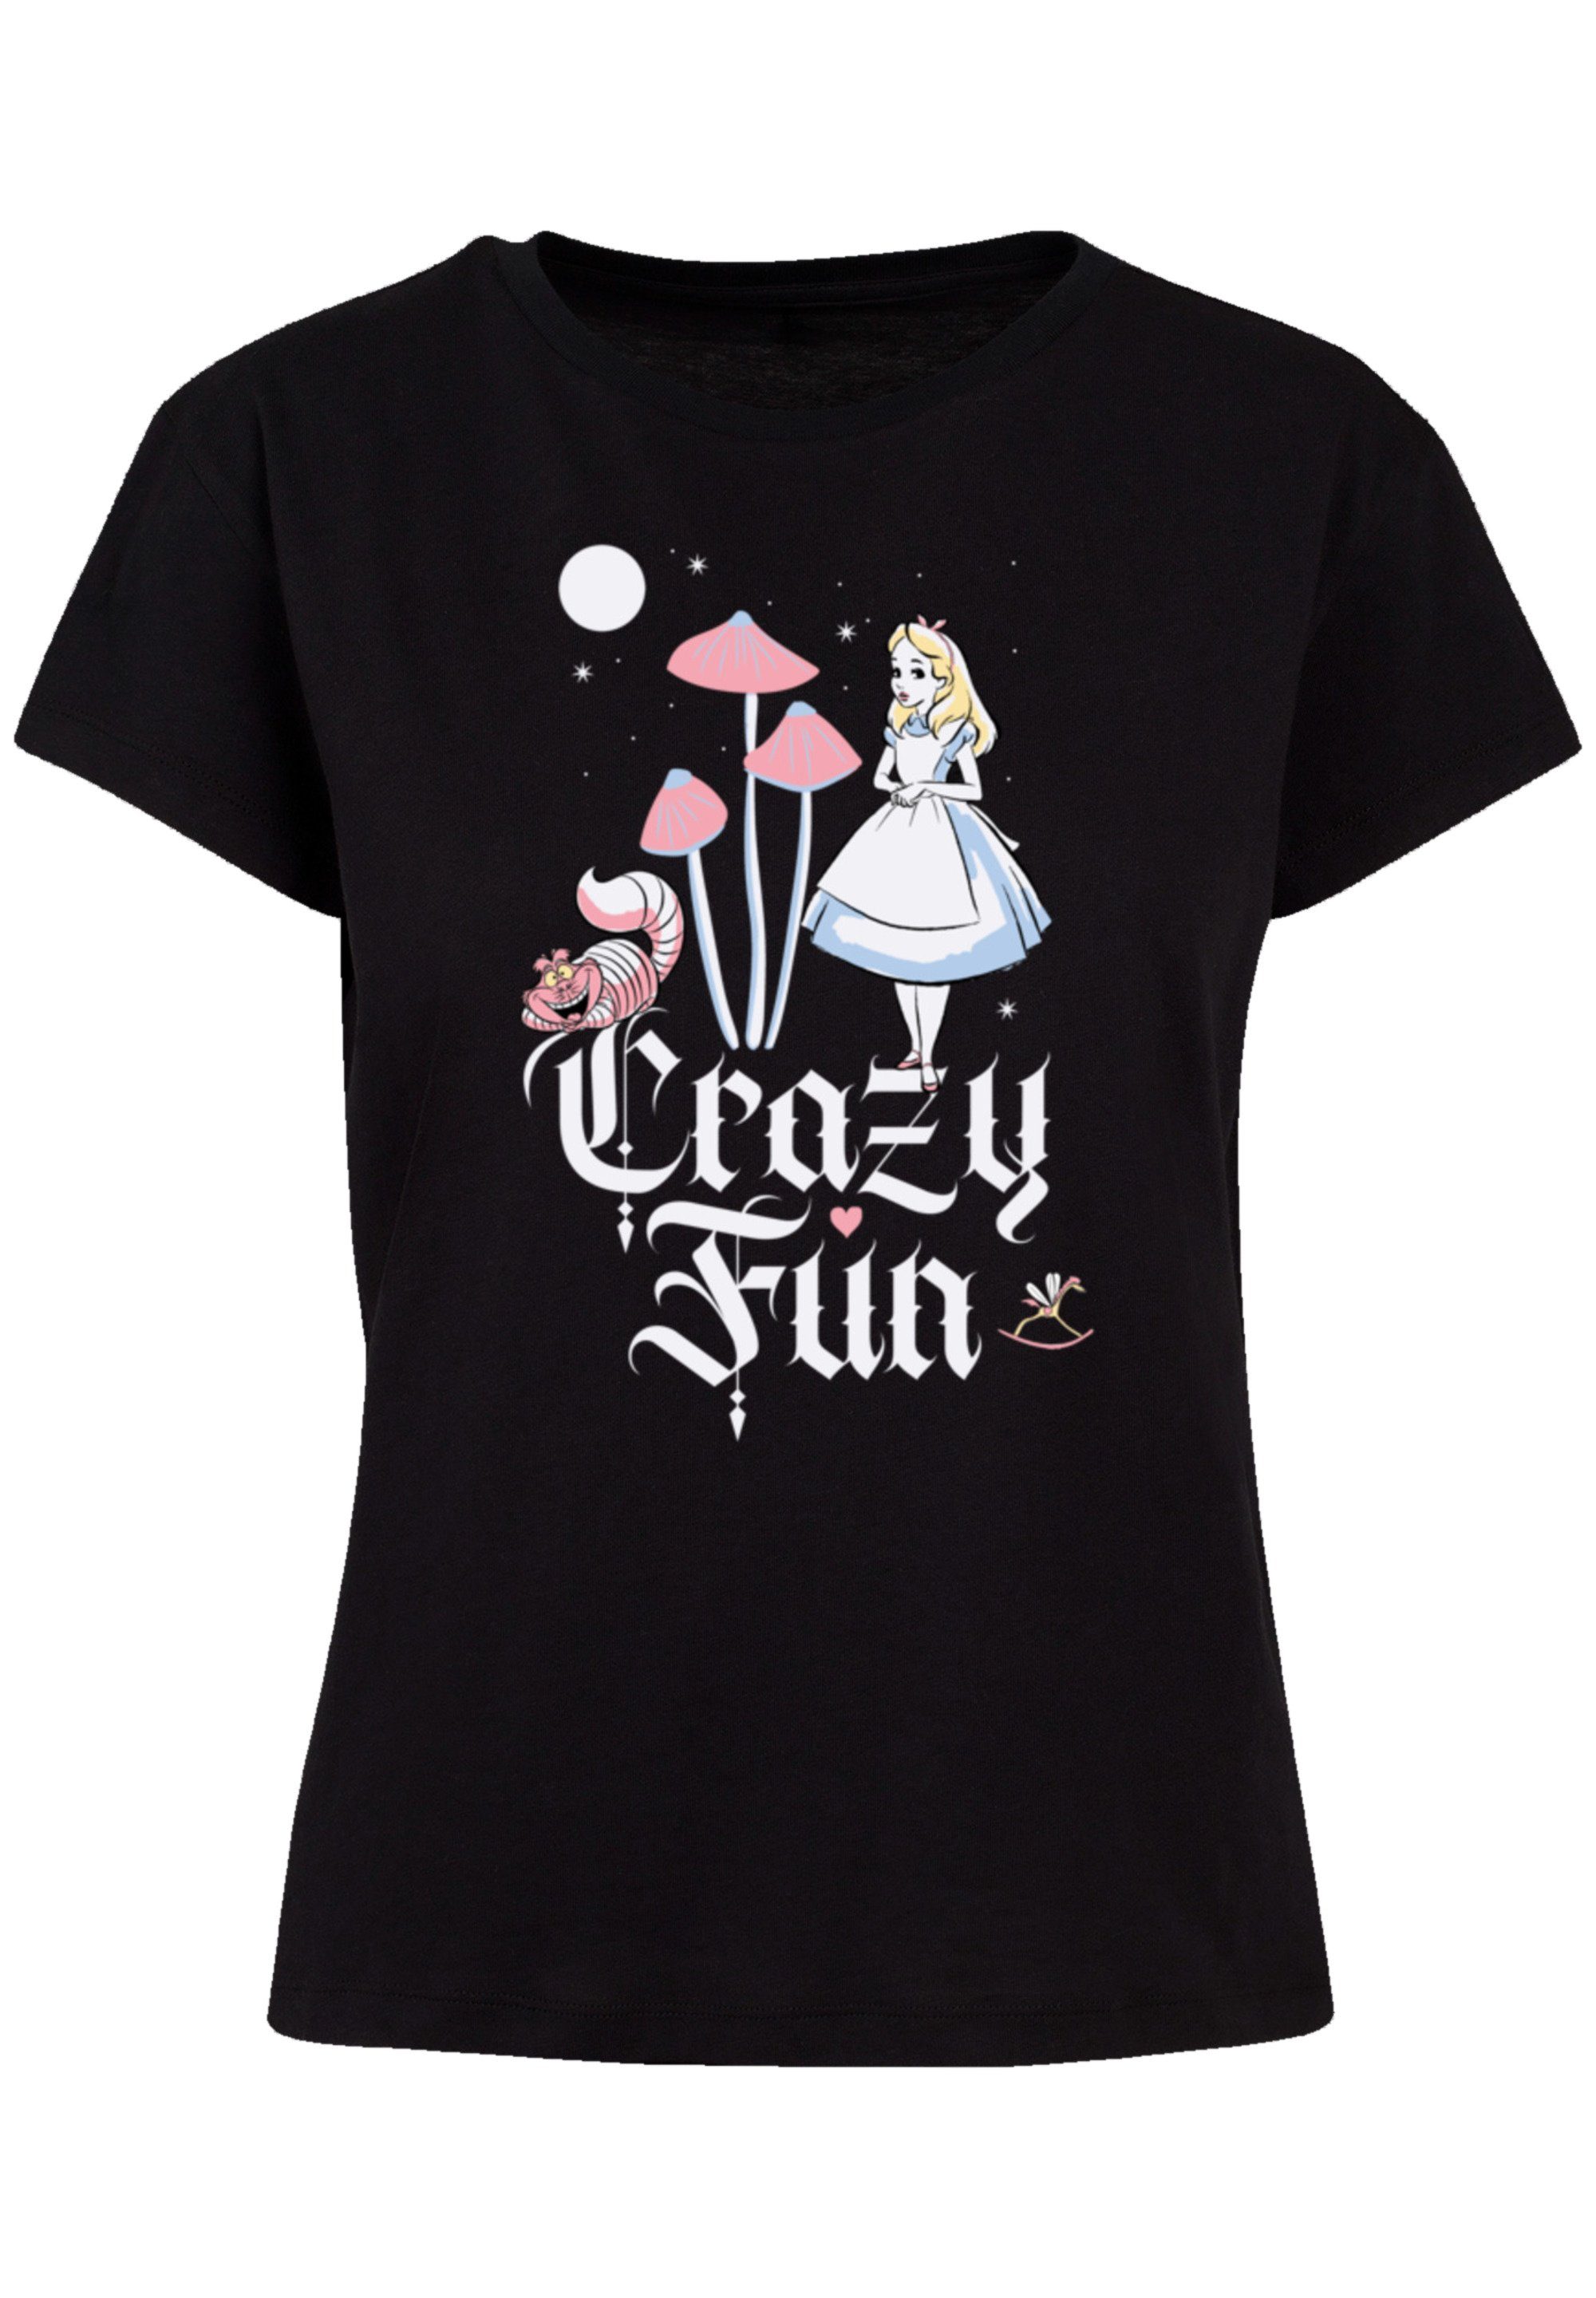 Perfekte Alice F4NT4STIC Premium Disney und Passform Fun im Qualität, Verarbeitung Wunderland Crazy T-Shirt hochwertige